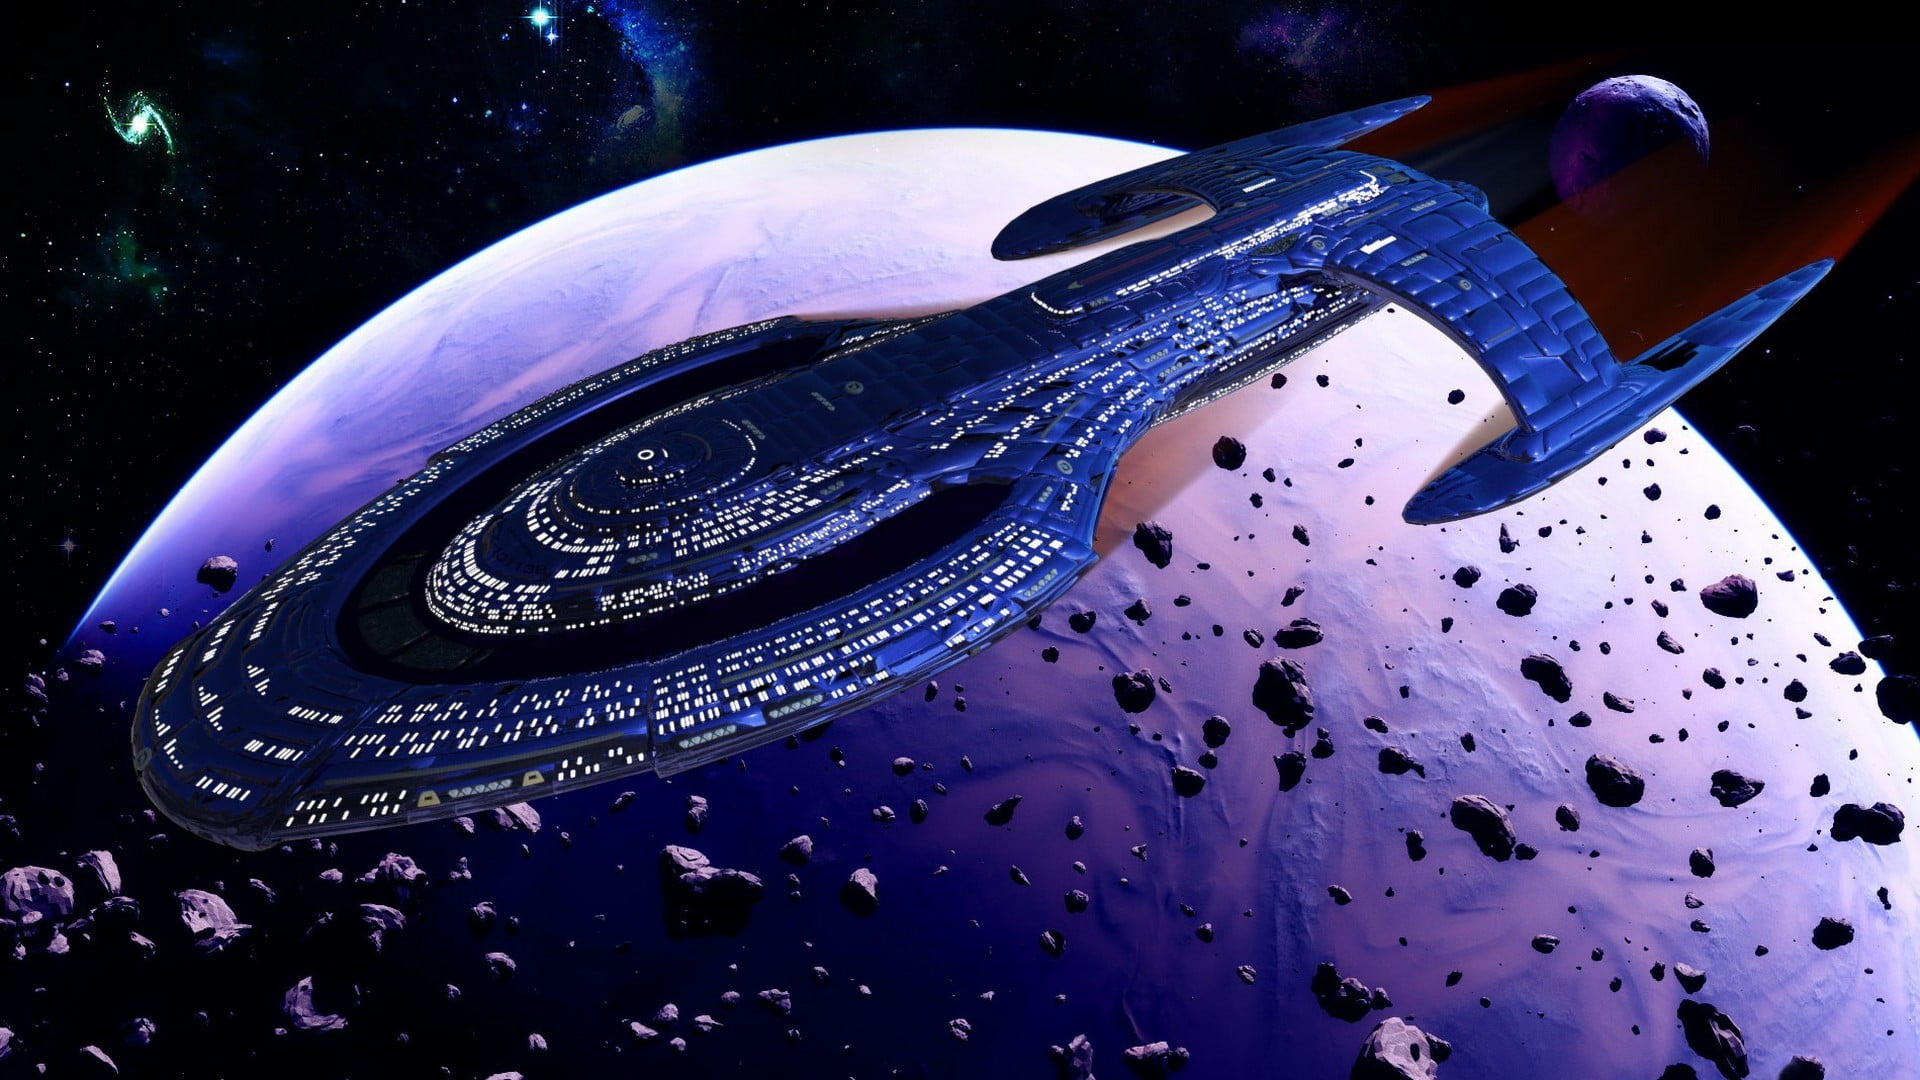 blue and black spacecraft, fantasy art, space, Star Trek